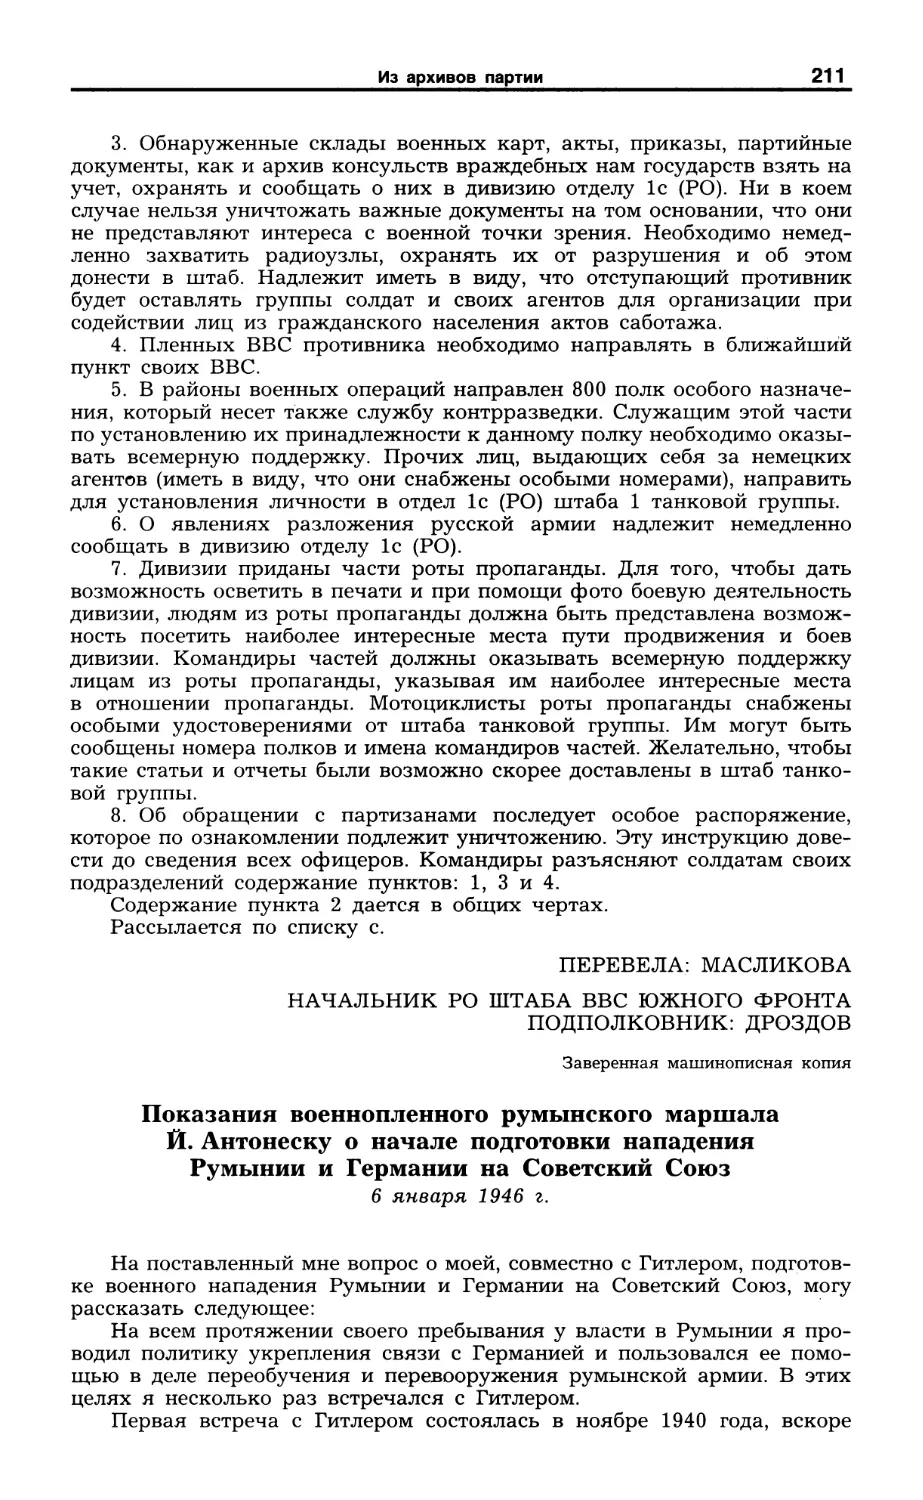 Показания военнопленного румынского маршала Й. Антонеску. 6 января 1946 г